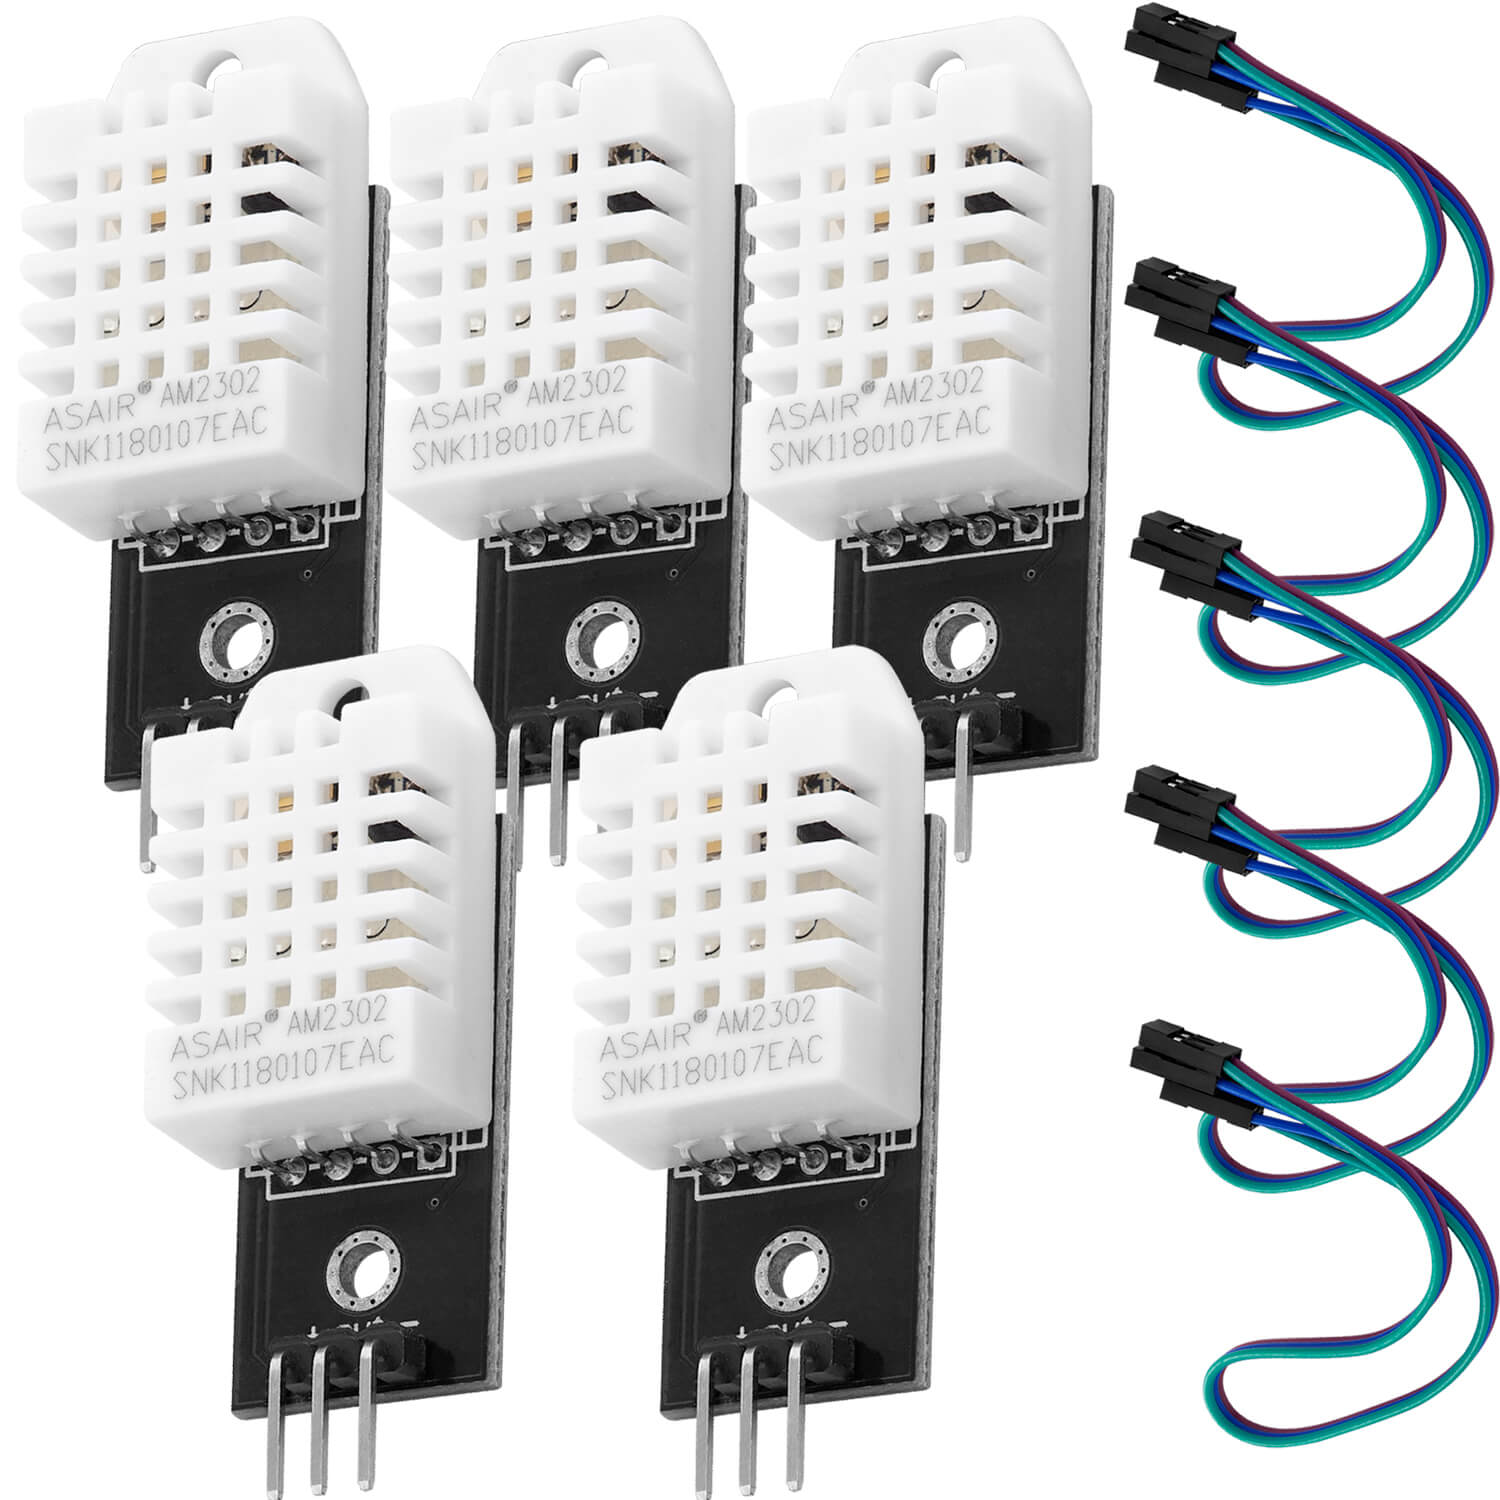 DHT22 AM2302 Temperatursensor und Luftfeuchtigkeitssensor mit Platine und Kabel kompatibel mit Arduino und Raspberry Pi - AZ-Delivery